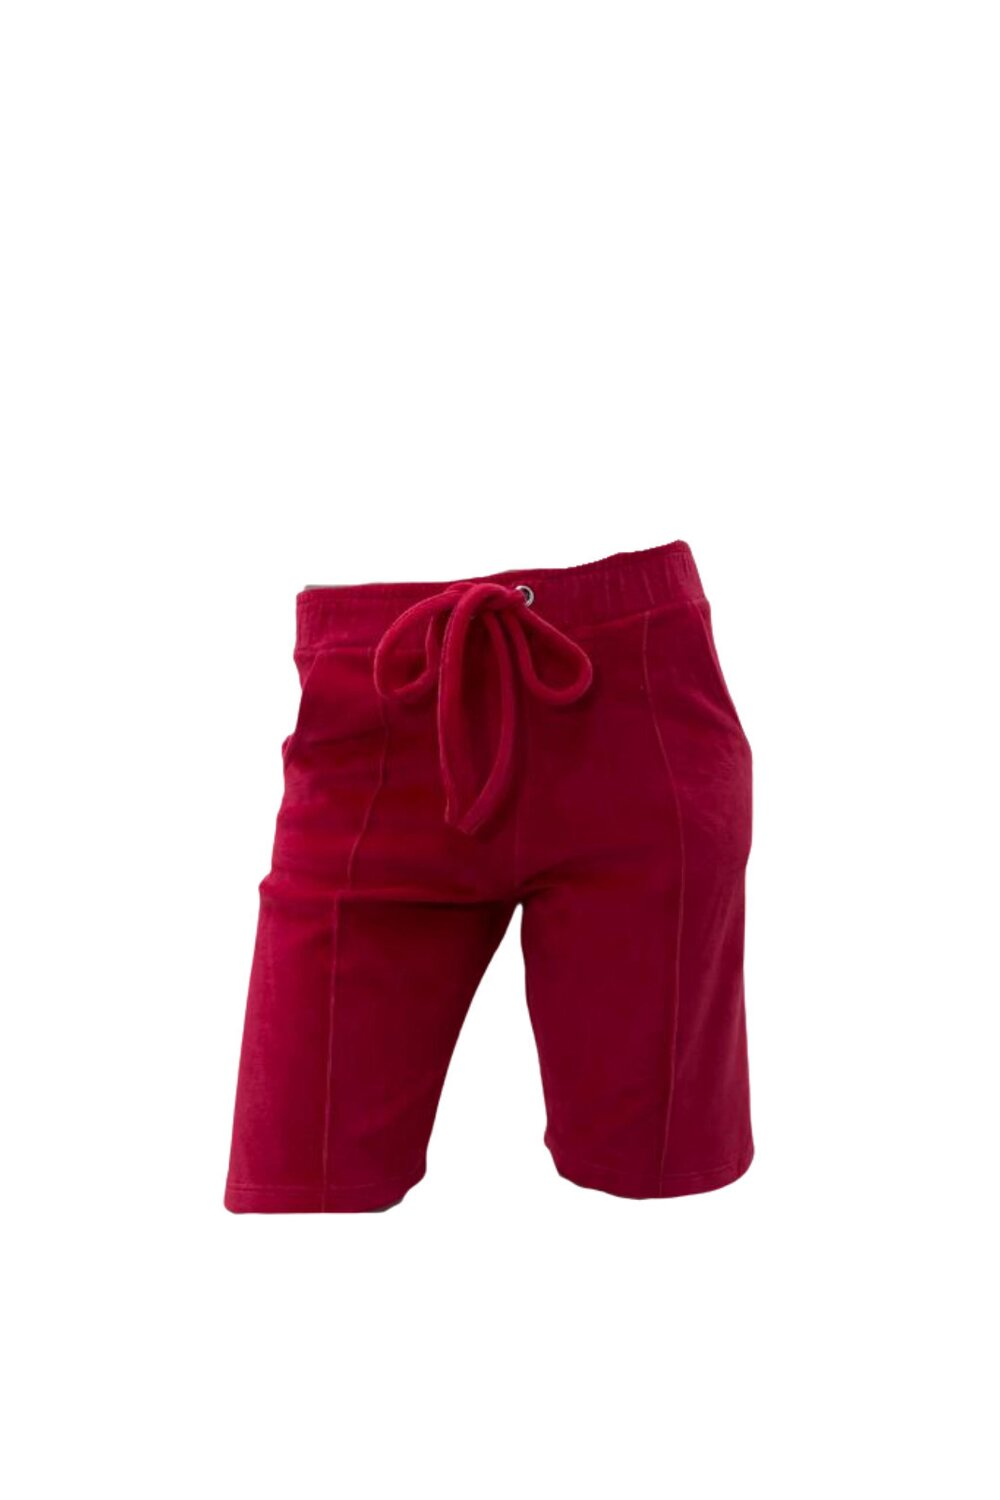 Pantaloni Scurti de Dama, din Catifea, Rosu image